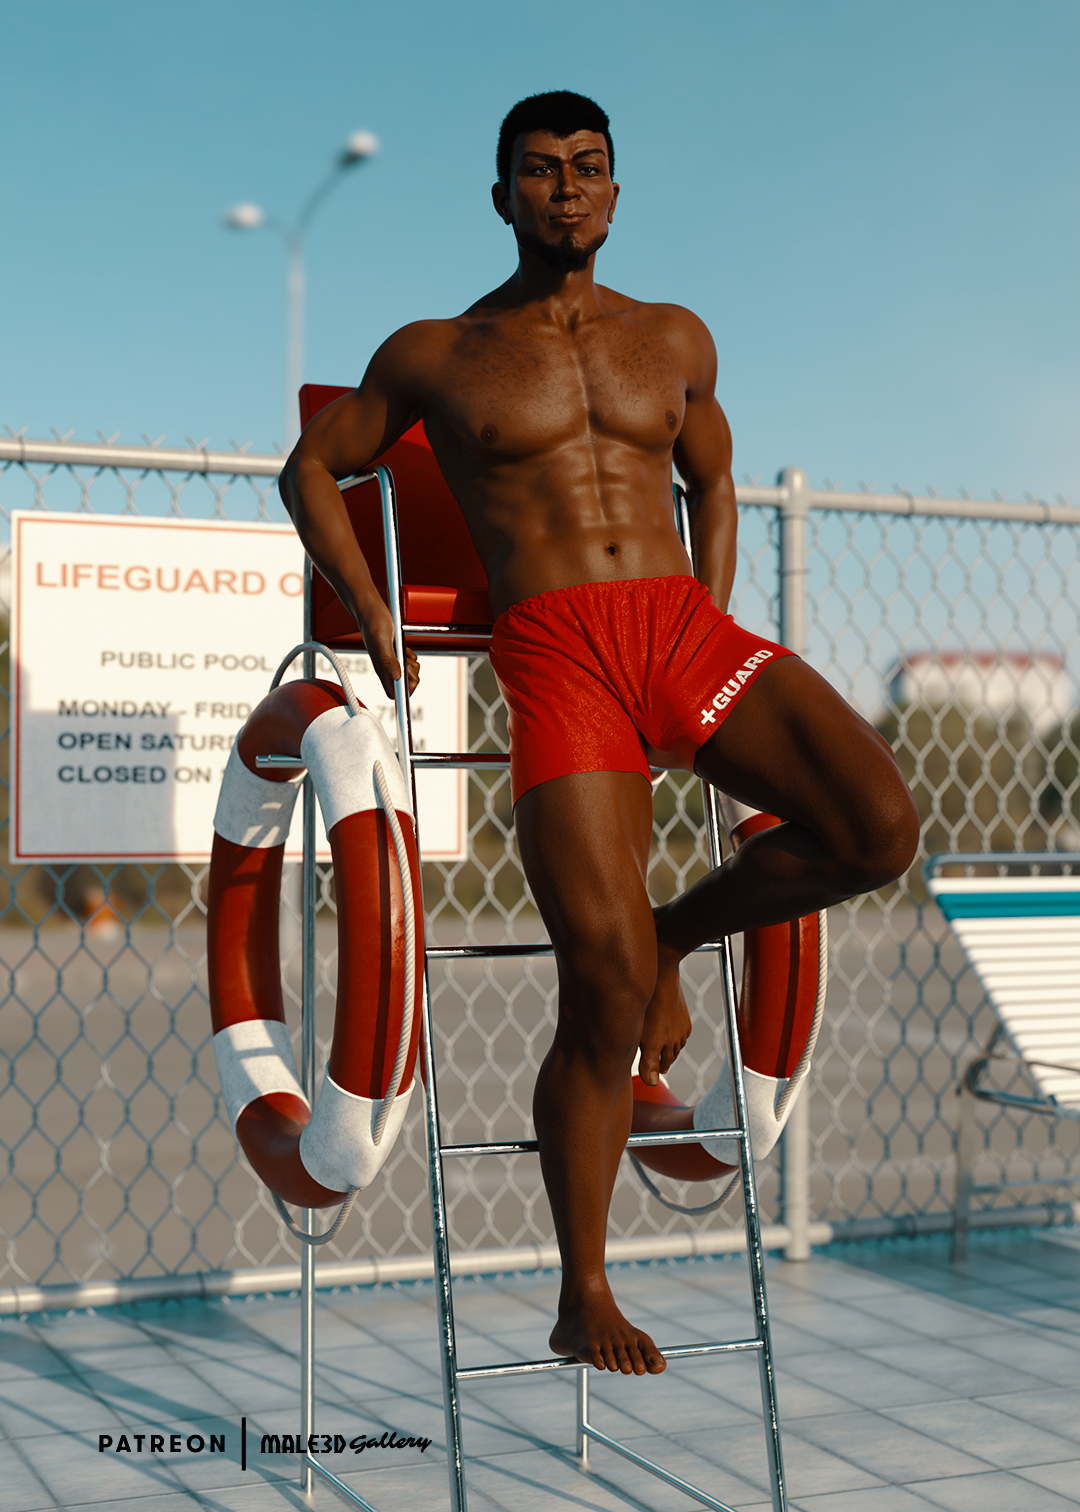 Abasi is a Lifeguard